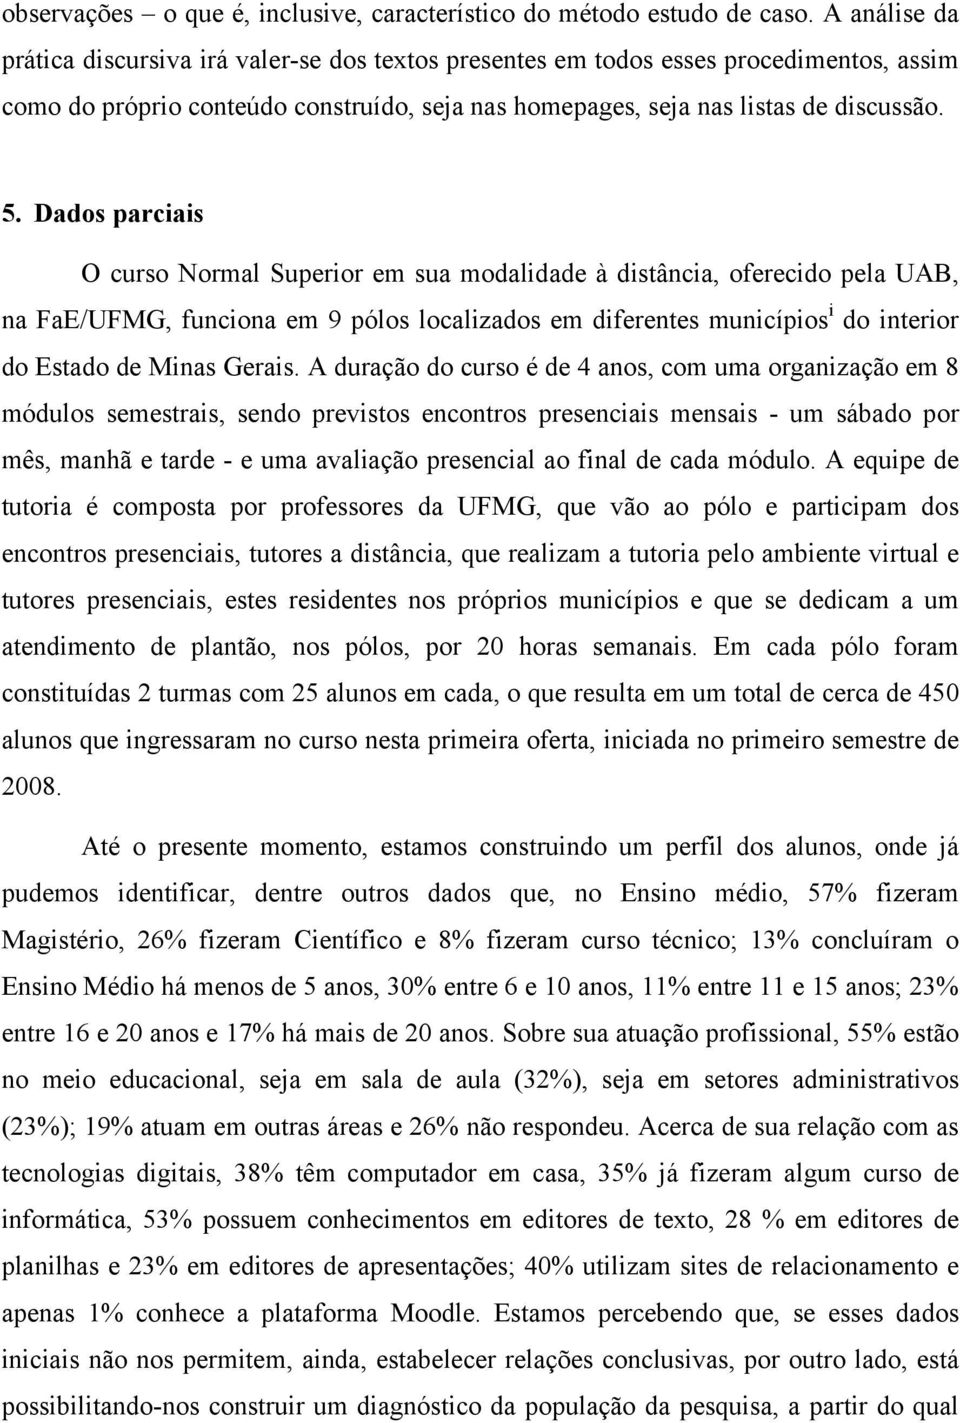 Dados parciais O curso Normal Superior em sua modalidade à distância, oferecido pela UAB, na FaE/UFMG, funciona em 9 pólos localizados em diferentes municípios i do interior do Estado de Minas Gerais.